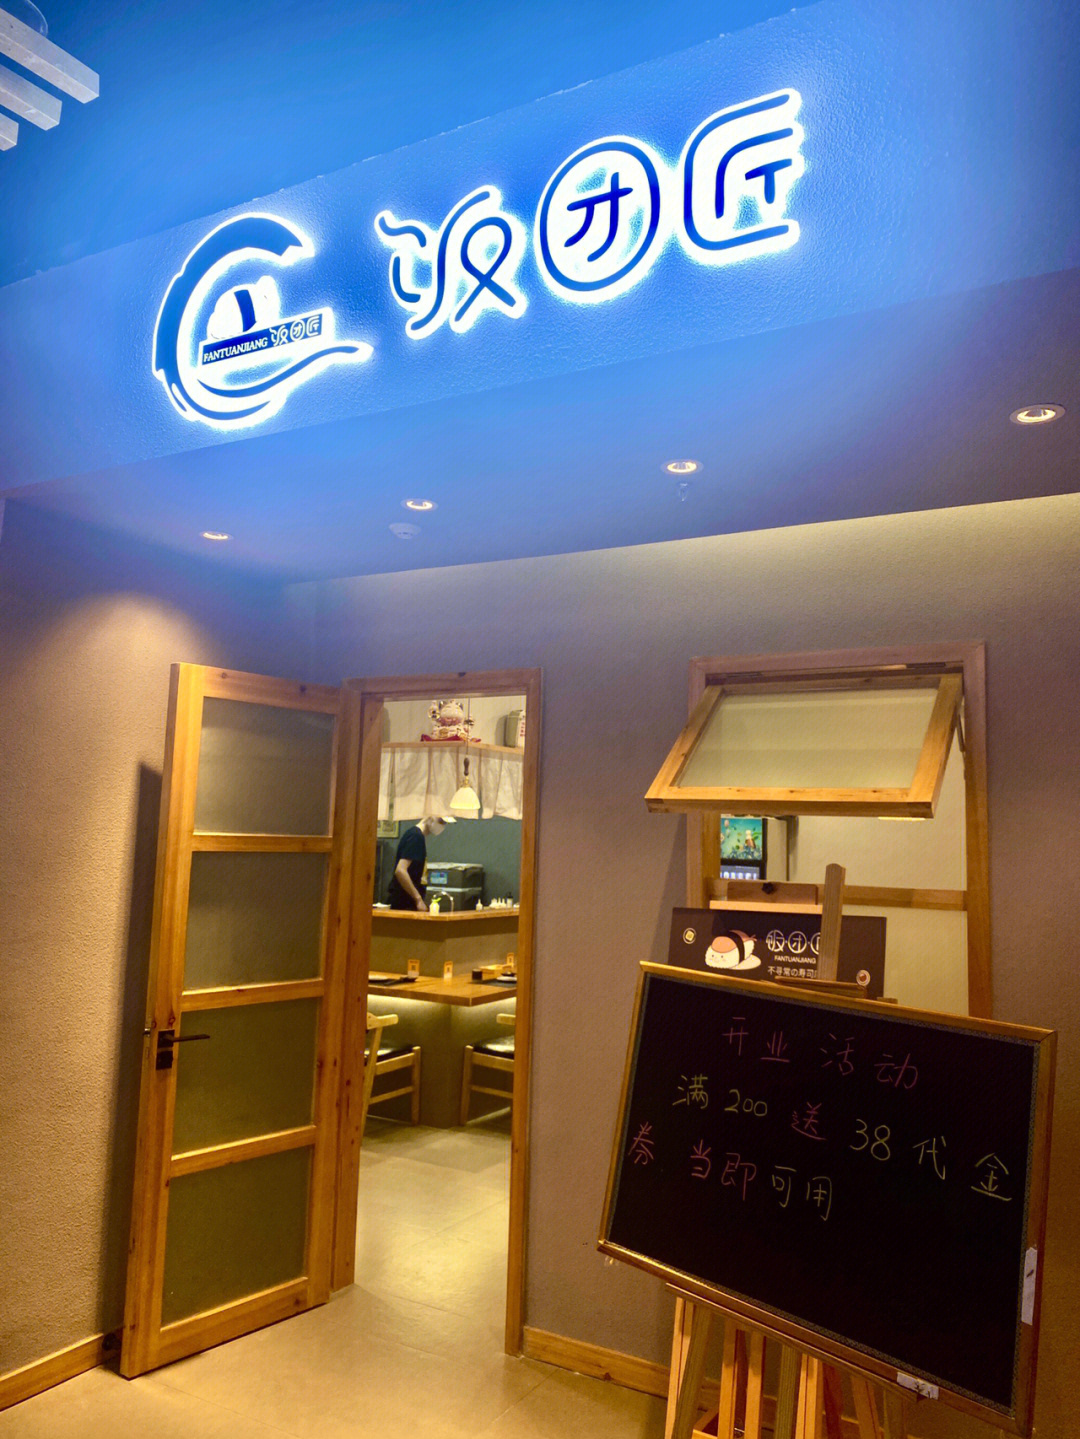 不寻常的寿司店饭团匠亨特店开业啦